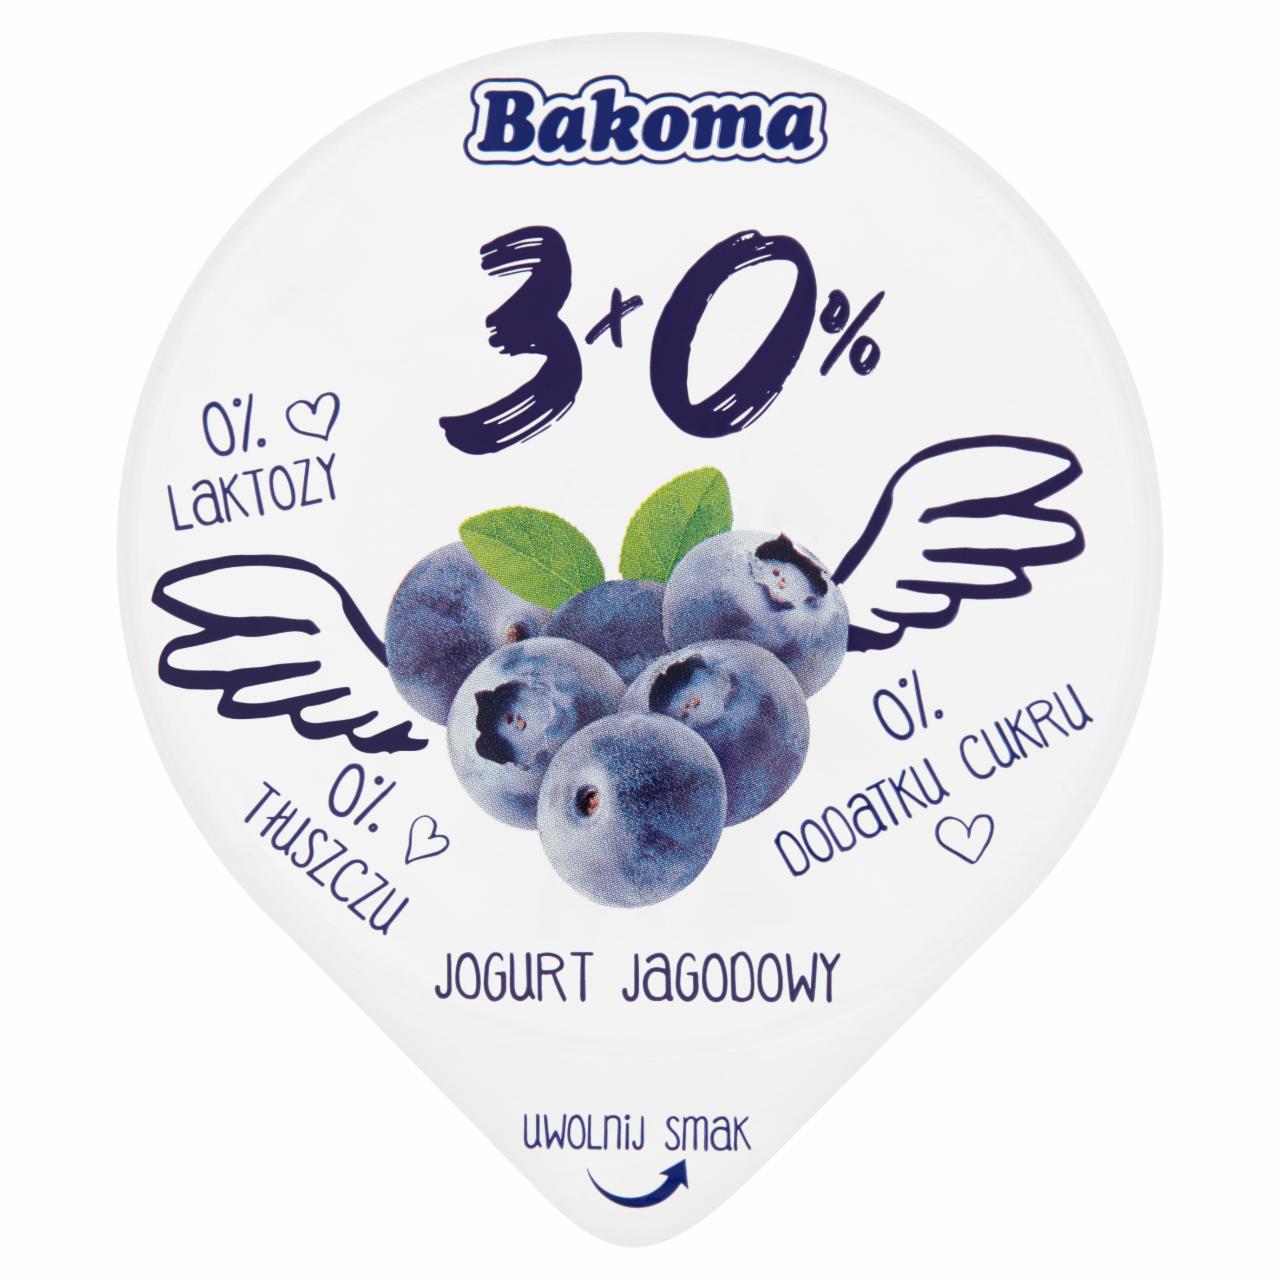 Zdjęcia - Bakoma 3x0% Jogurt jagodowy 140 g